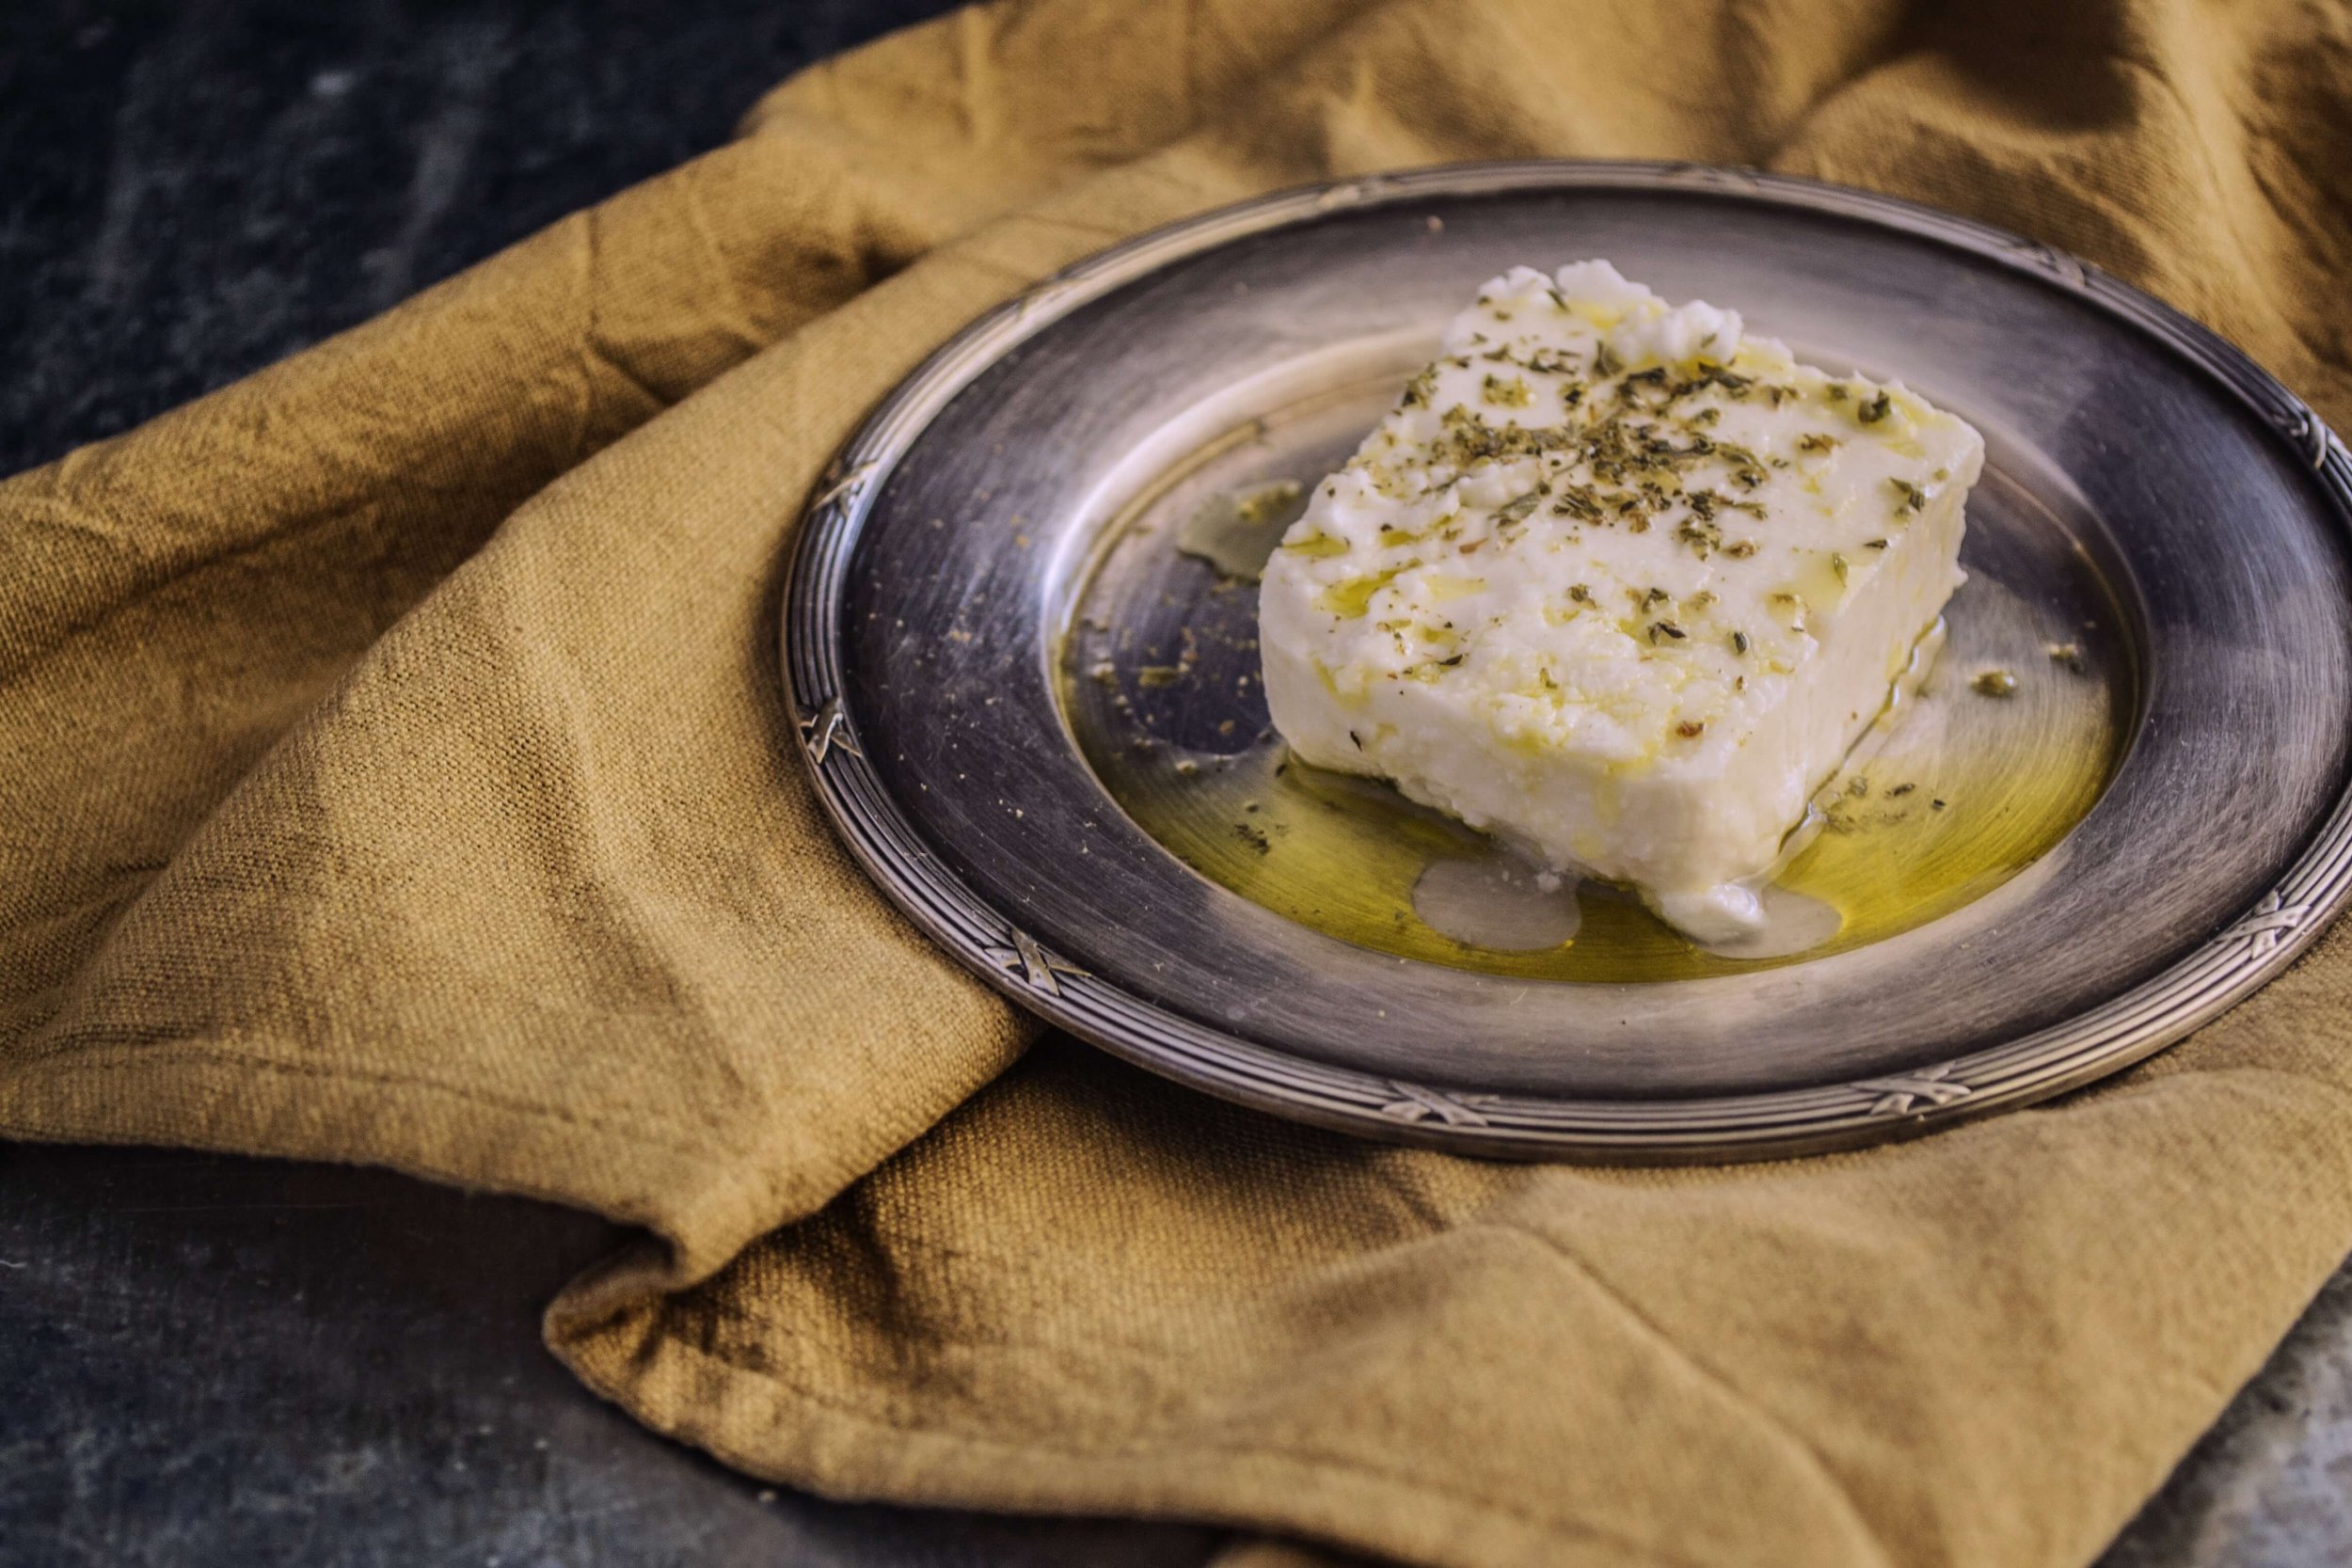 Cheese replica Parmesan Reggiano, with dish